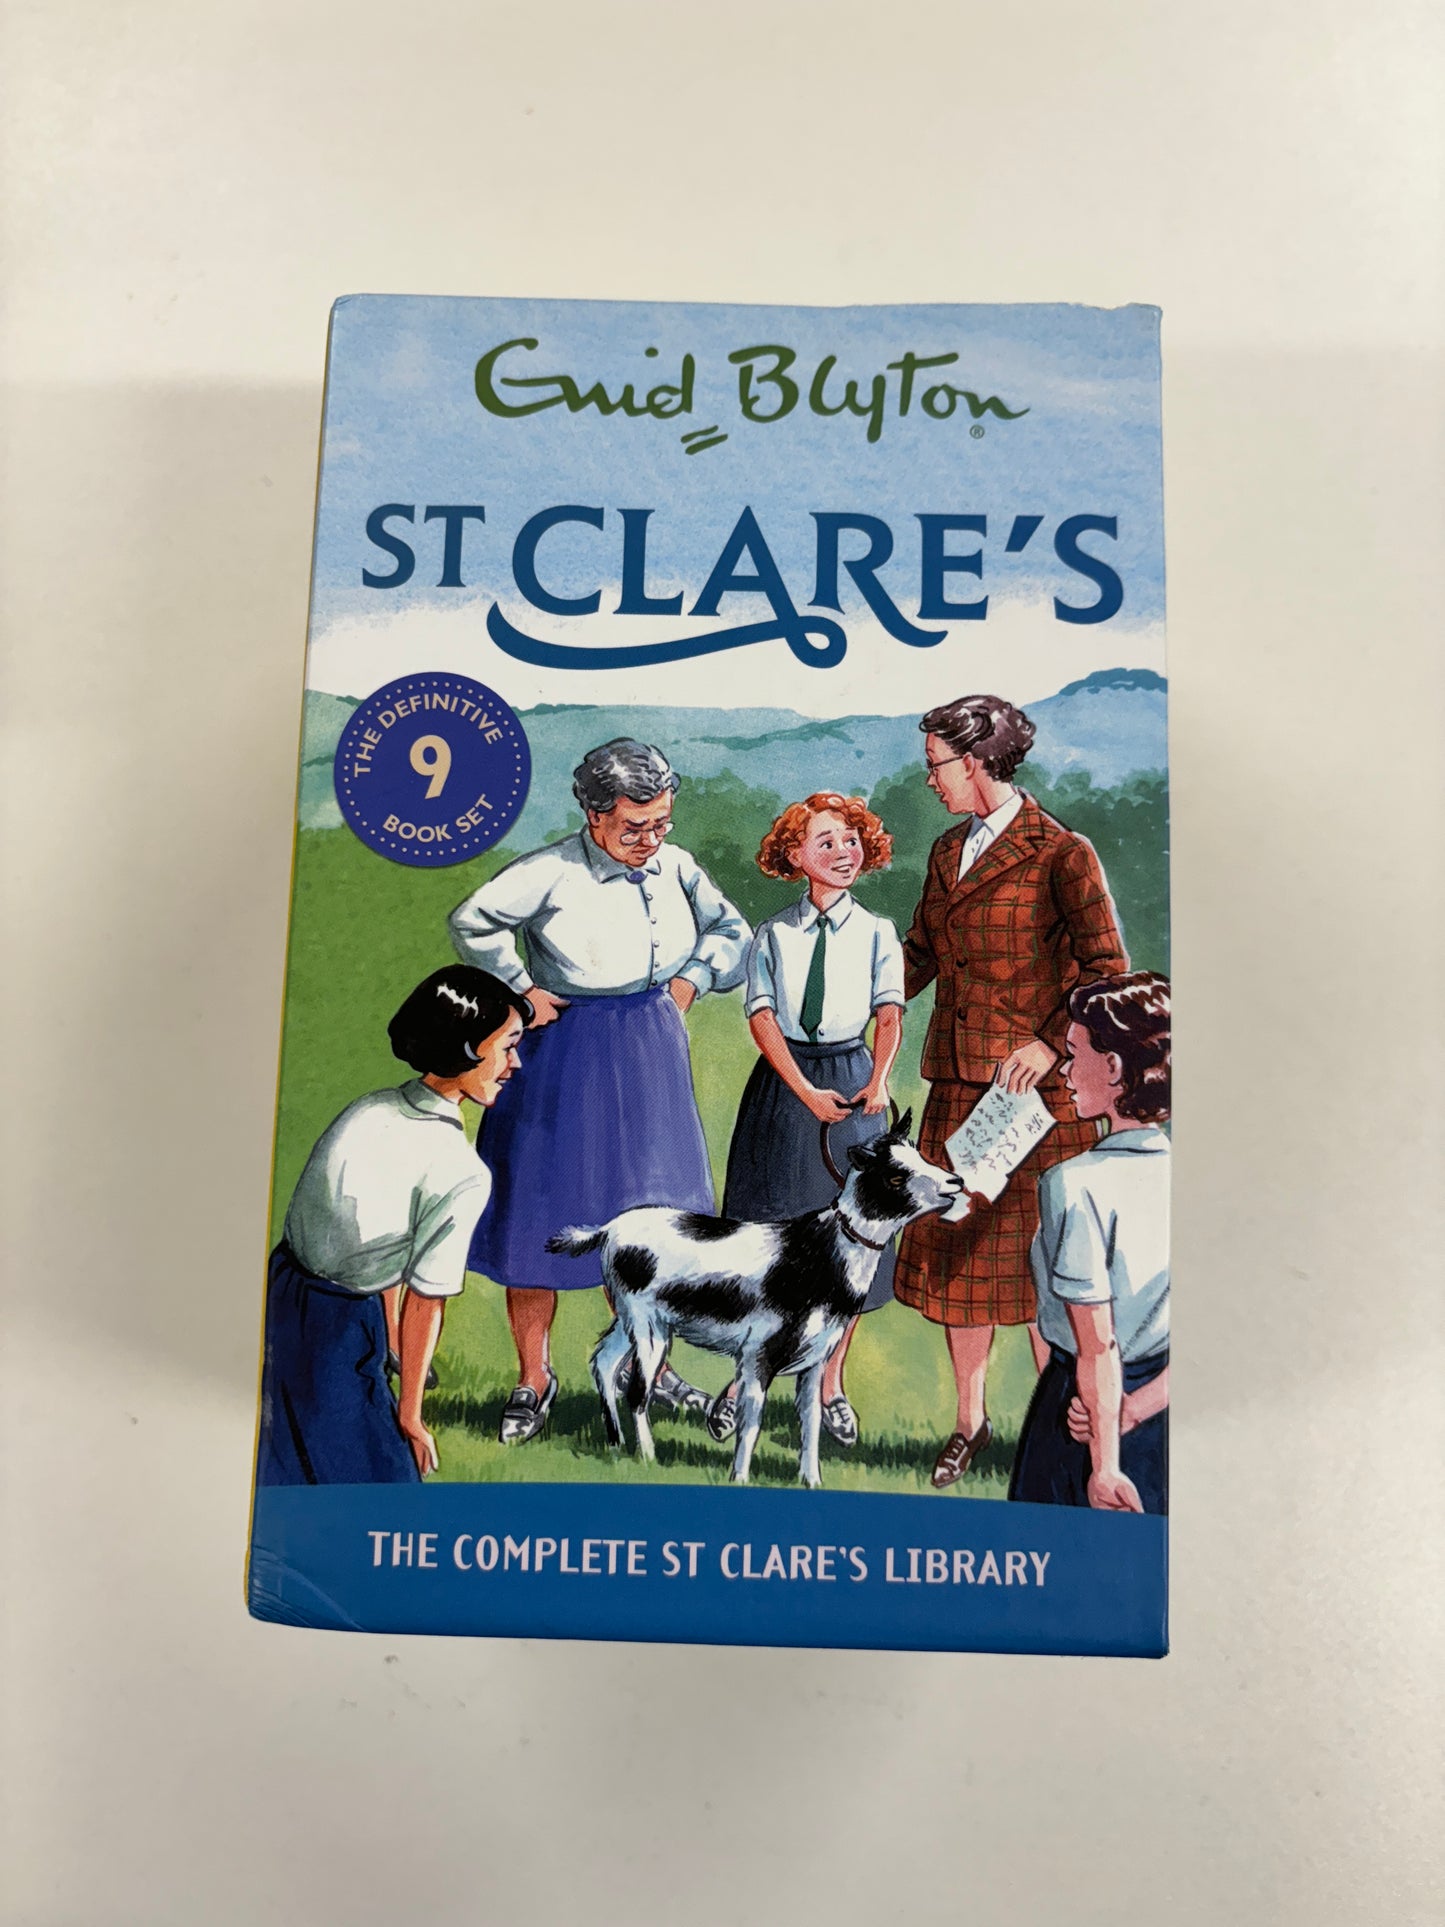 St Clare's 9 Book Set, Enid Blyton, Hodder Children's Books, 2018